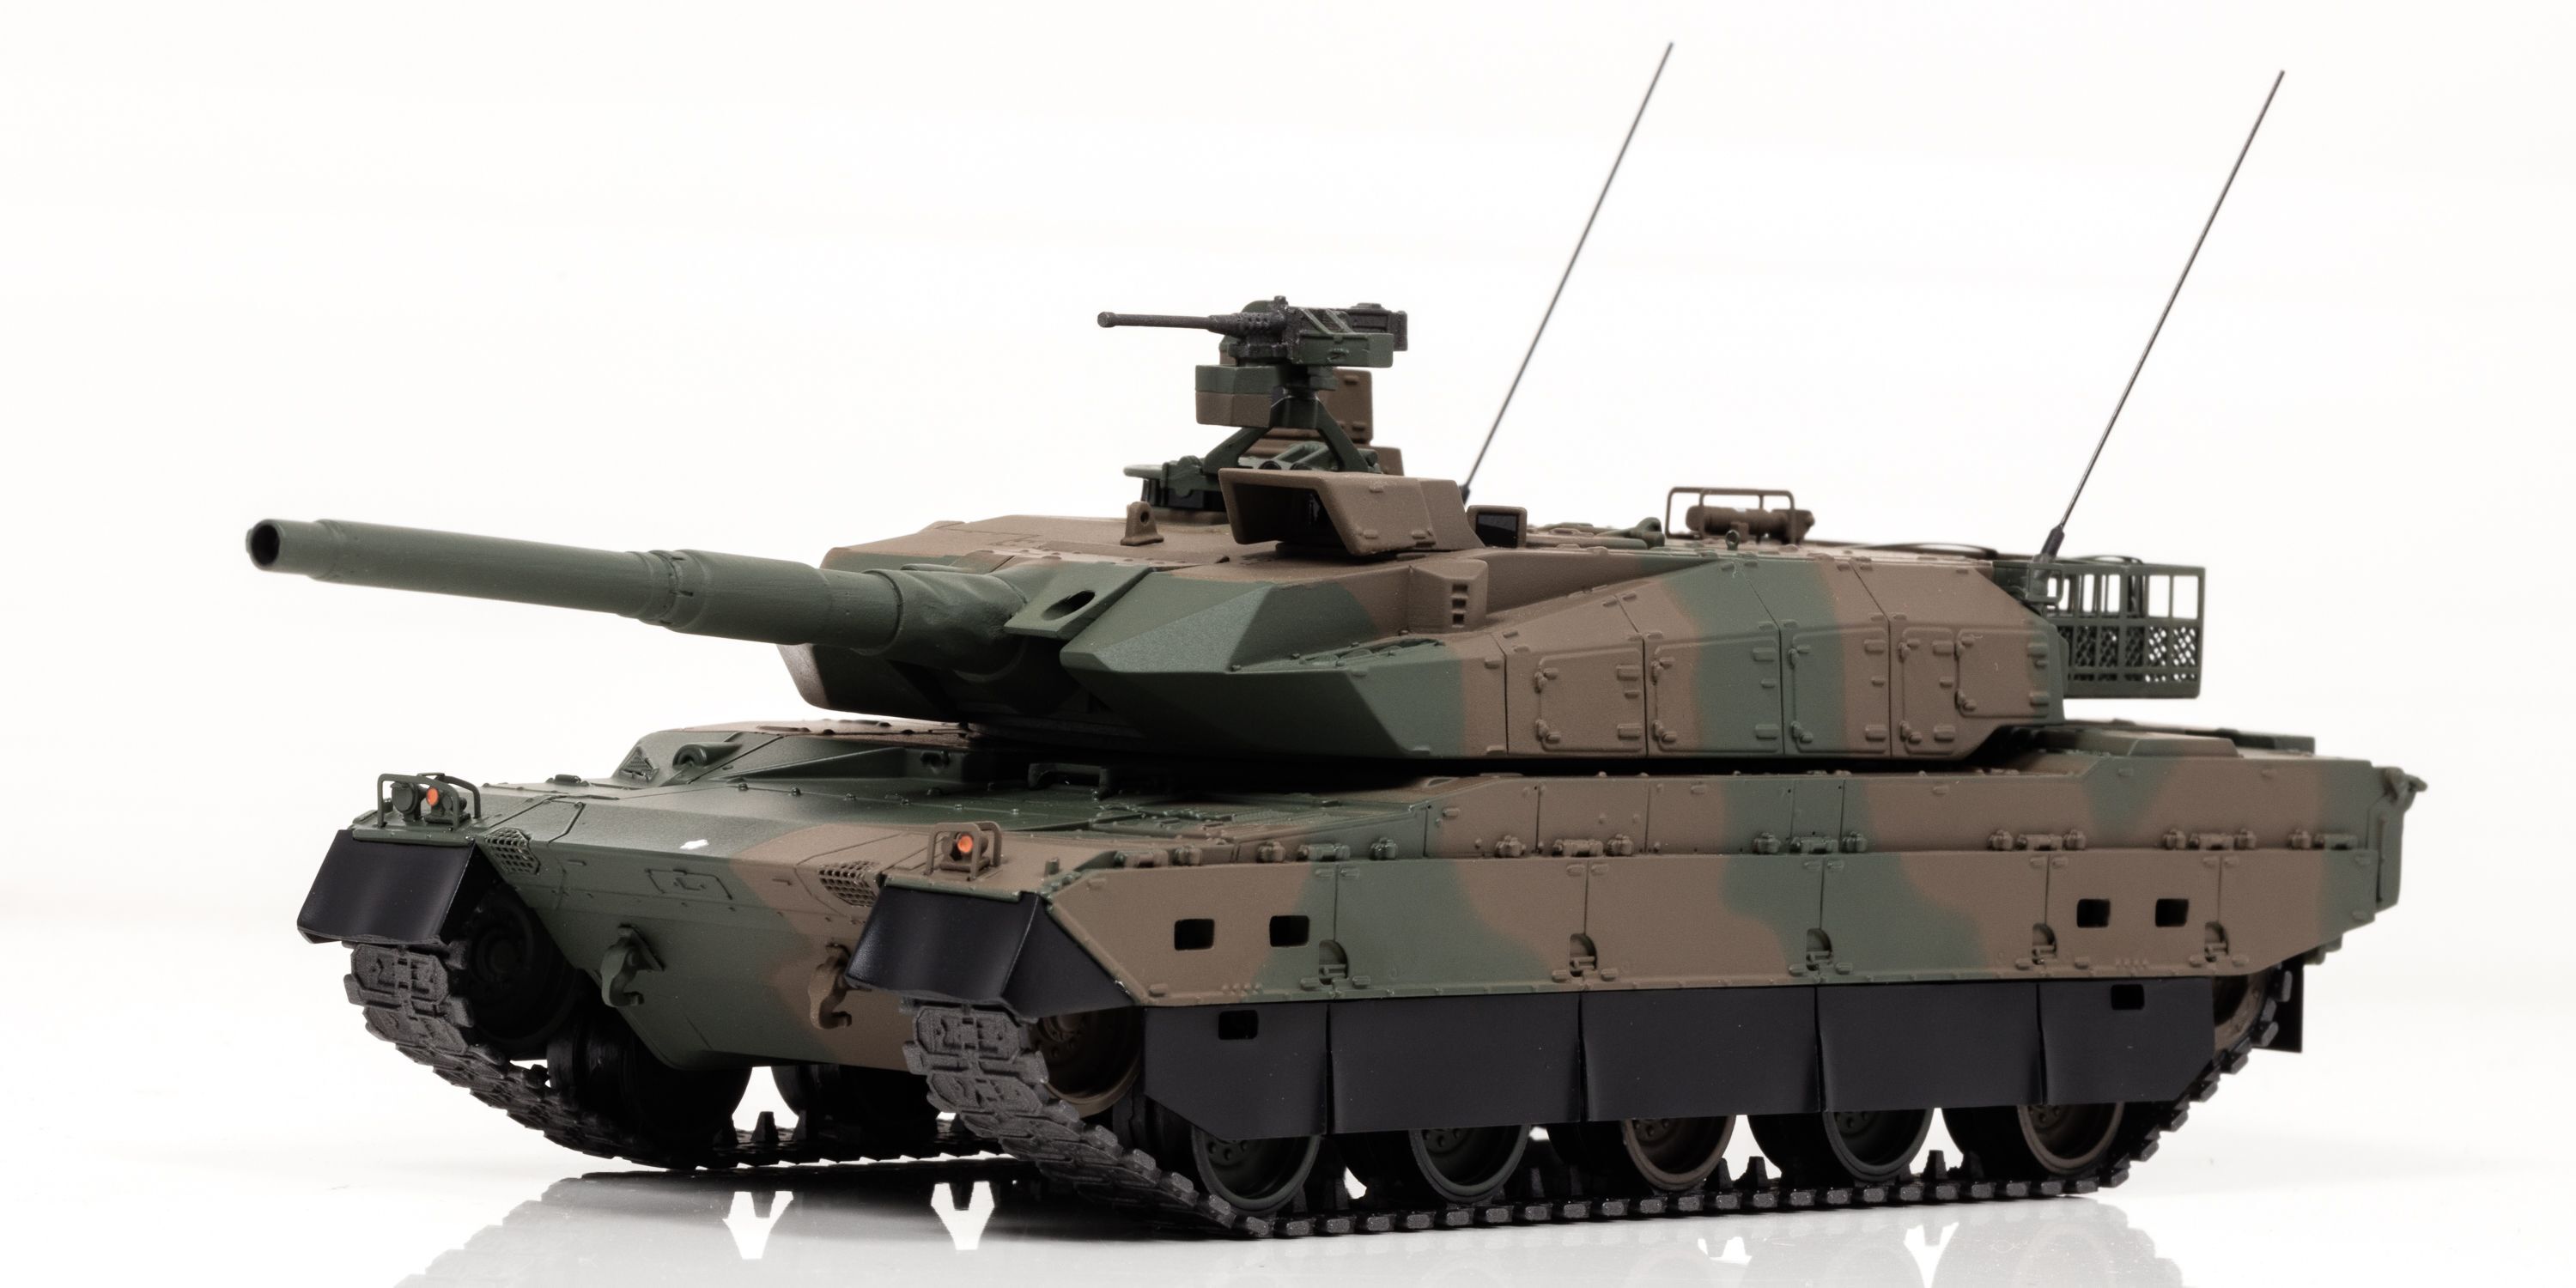 陸上自衛隊車両の主力戦車である10式戦車が1 43スケール完成品で登場 7月10日予約受付開始 株式会社ヒコセブンのプレスリリース